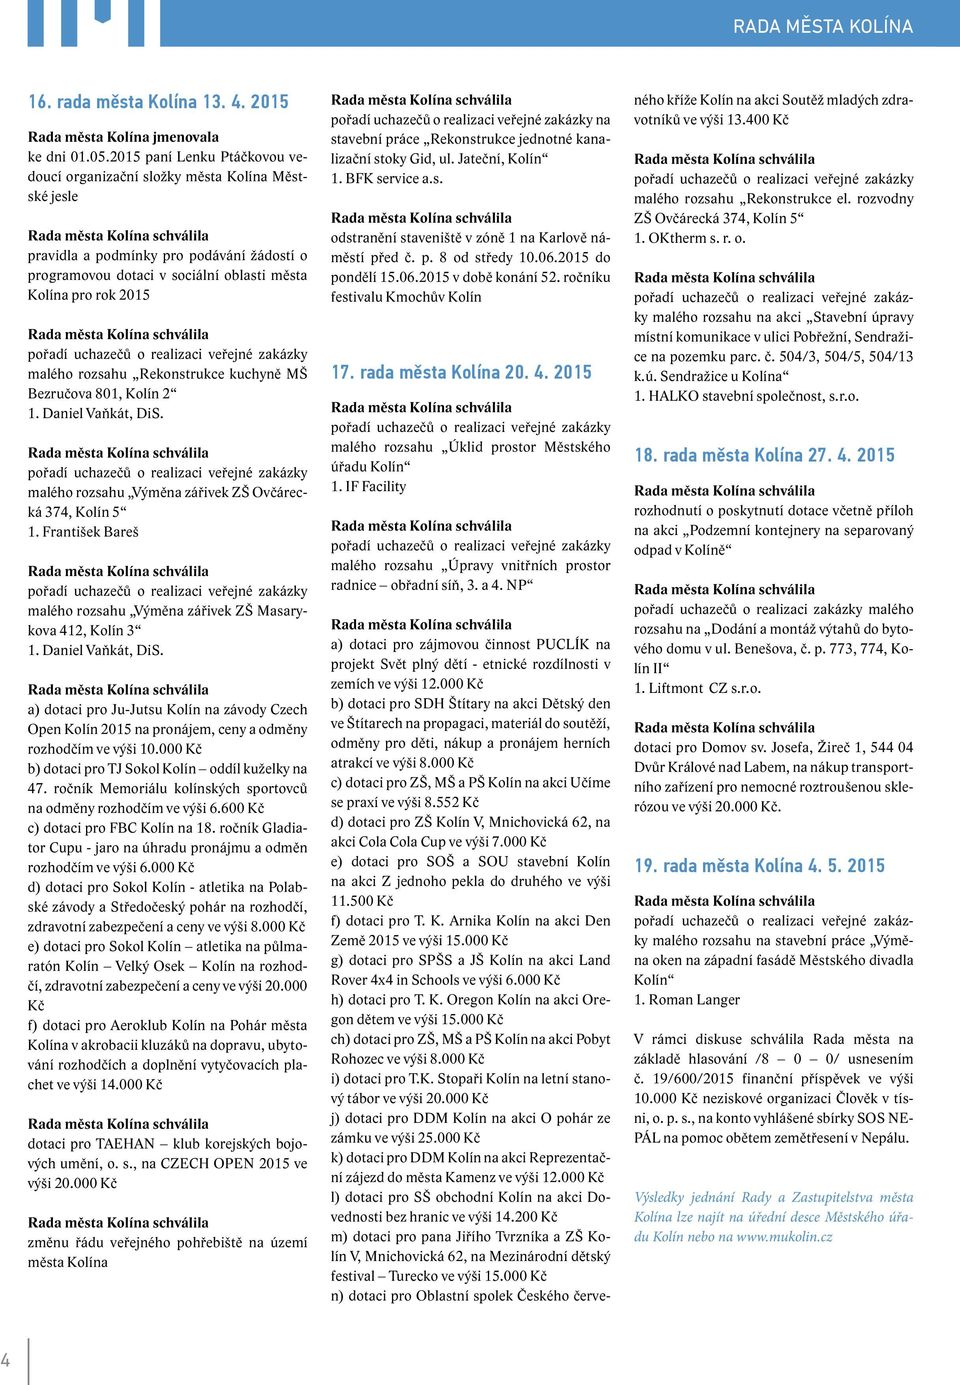 uchazečů o realizaci veřejné zakázky malého rozsahu Rekonstrukce kuchyně MŠ Bezručova 801, Kolín 2 1. Daniel Vaňkát, DiS.